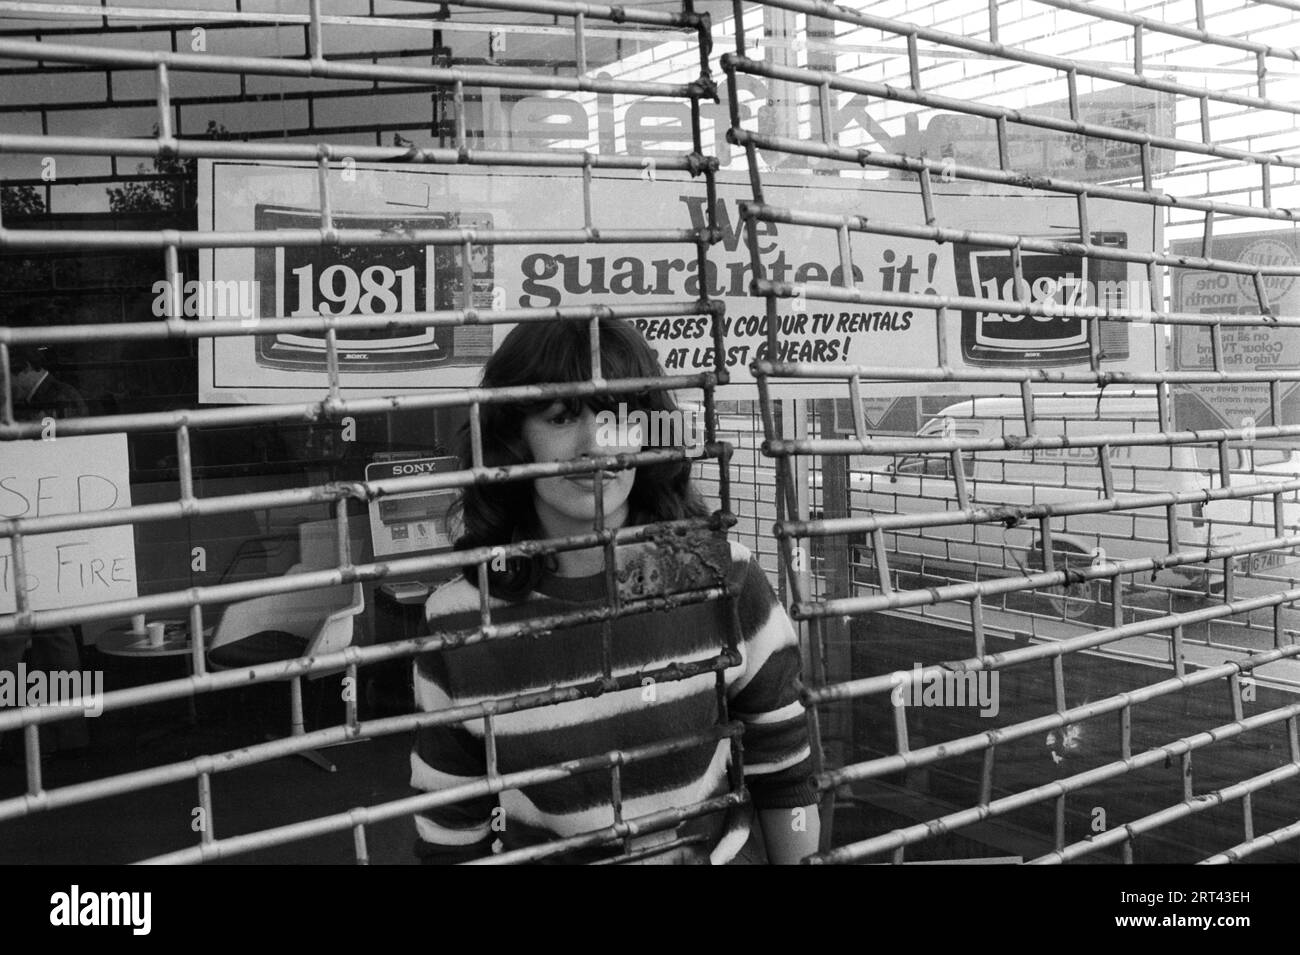 Toxteth Riot, Royaume-Uni 1981 le matin après les émeutes, un ouvrier derrière le grill métallique protégeant le magasin qui n'avait pas été pillé pendant l'émeute. Liverpool 8 Lancashire juillet 1980s HOMER SYKES Banque D'Images